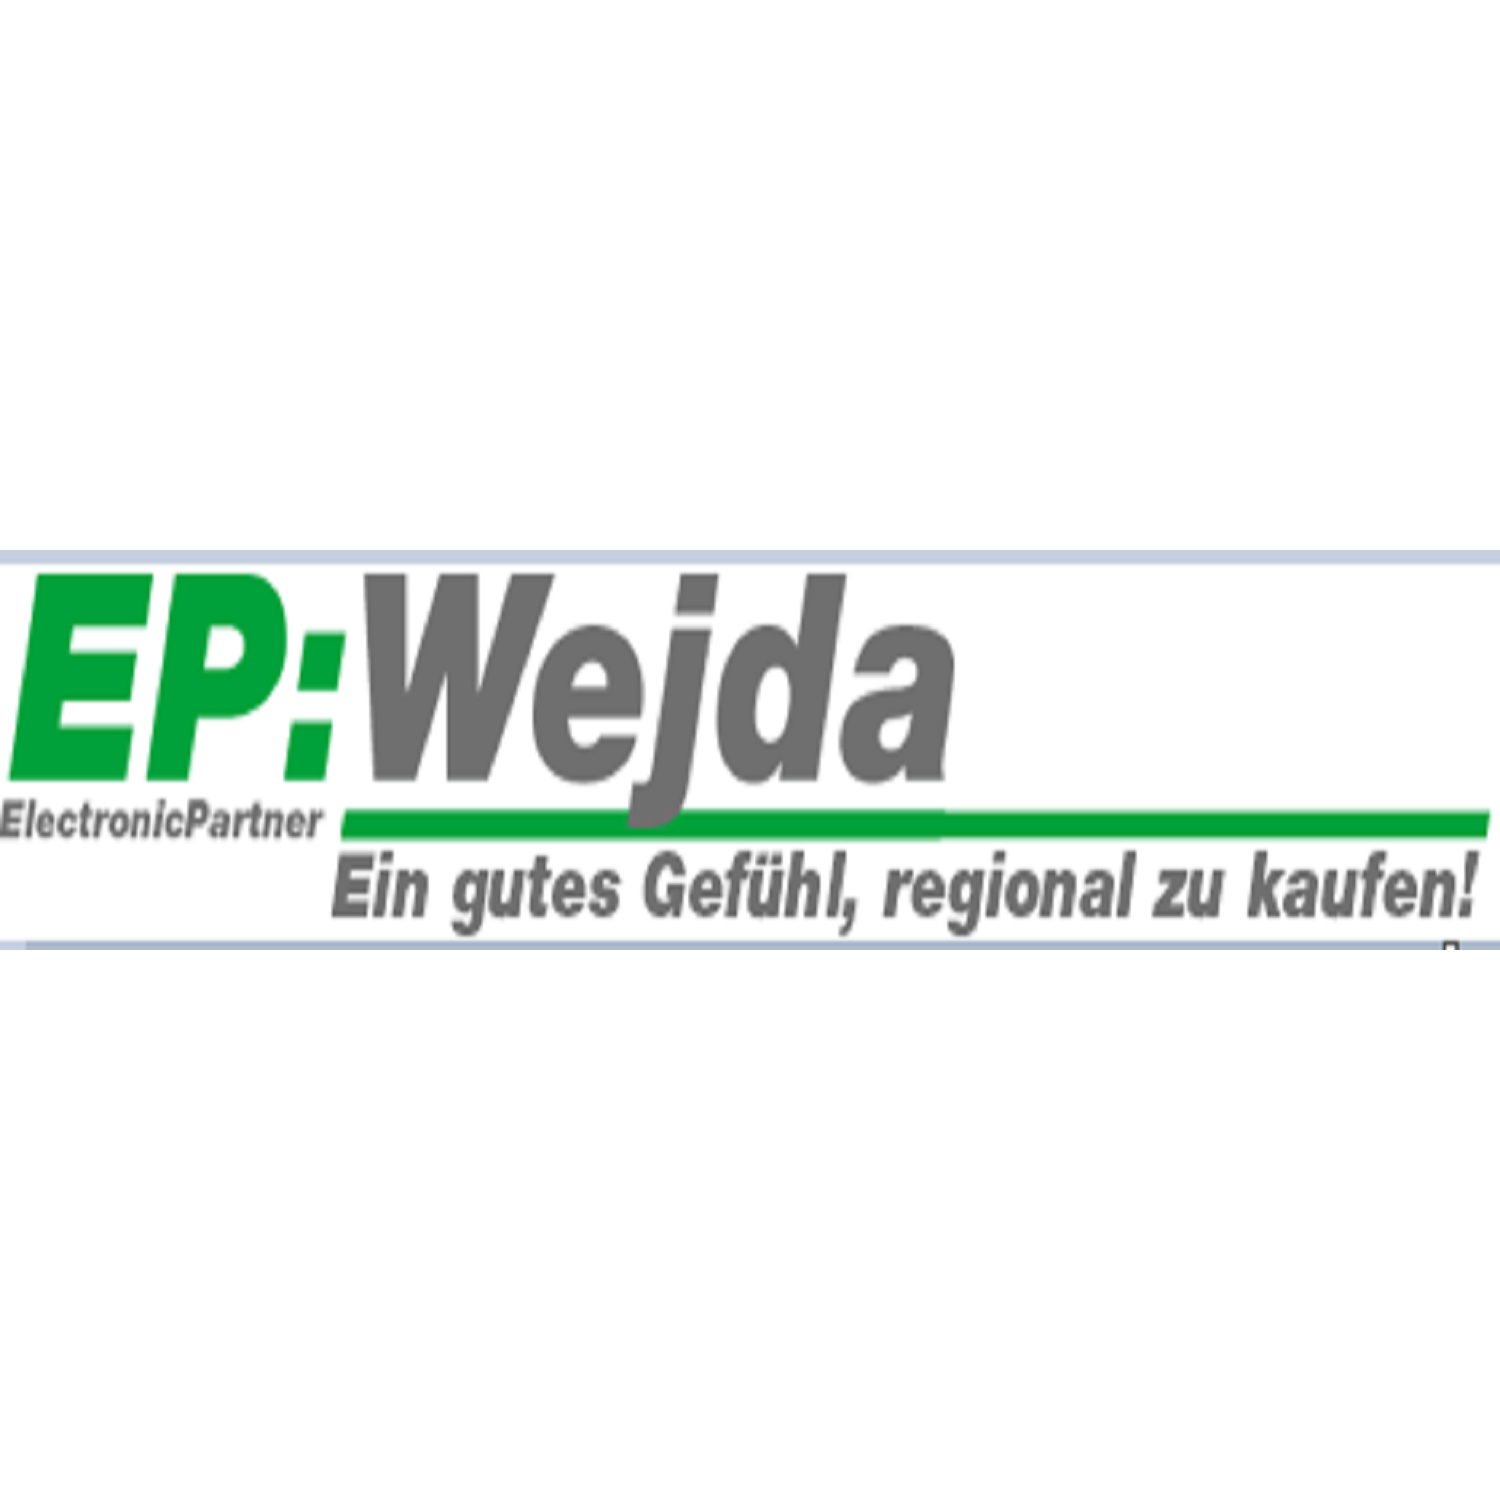 EP:Wejda - Logo